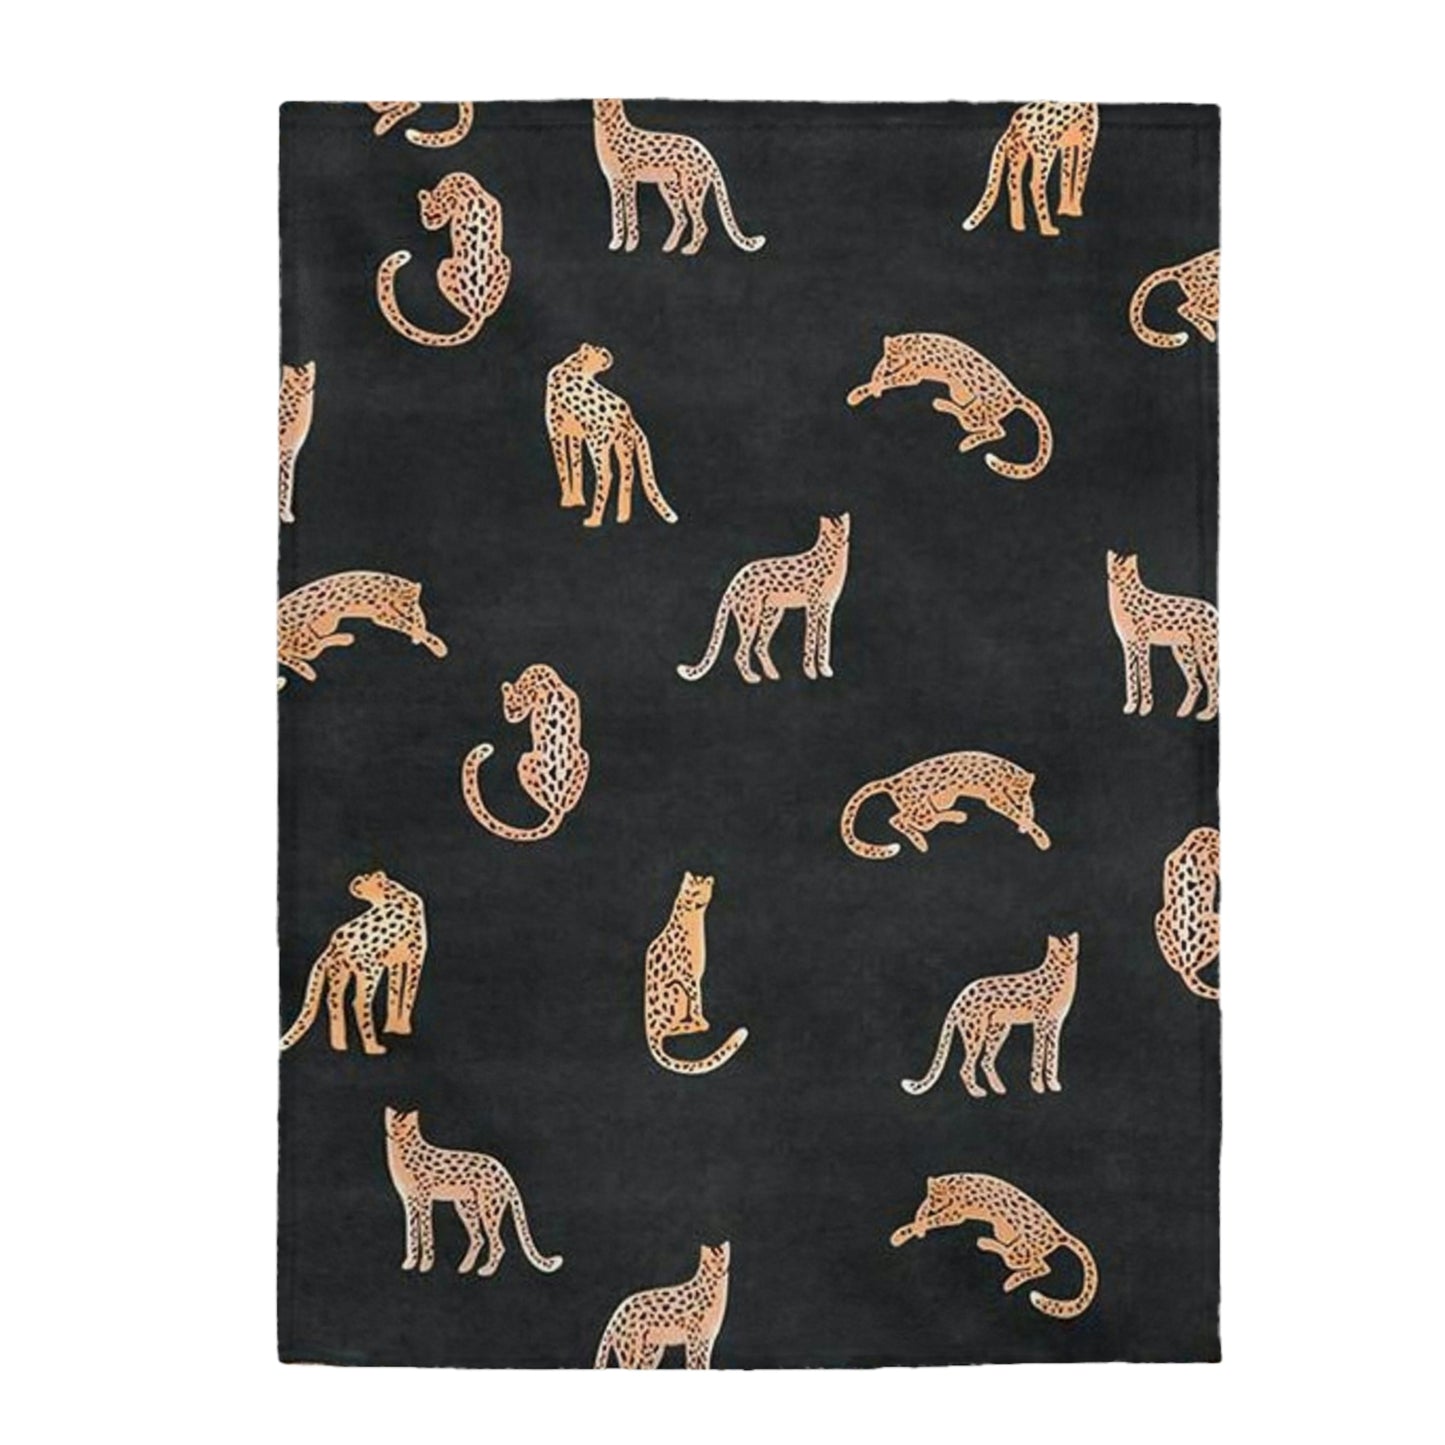 Tiger Plush Blanket